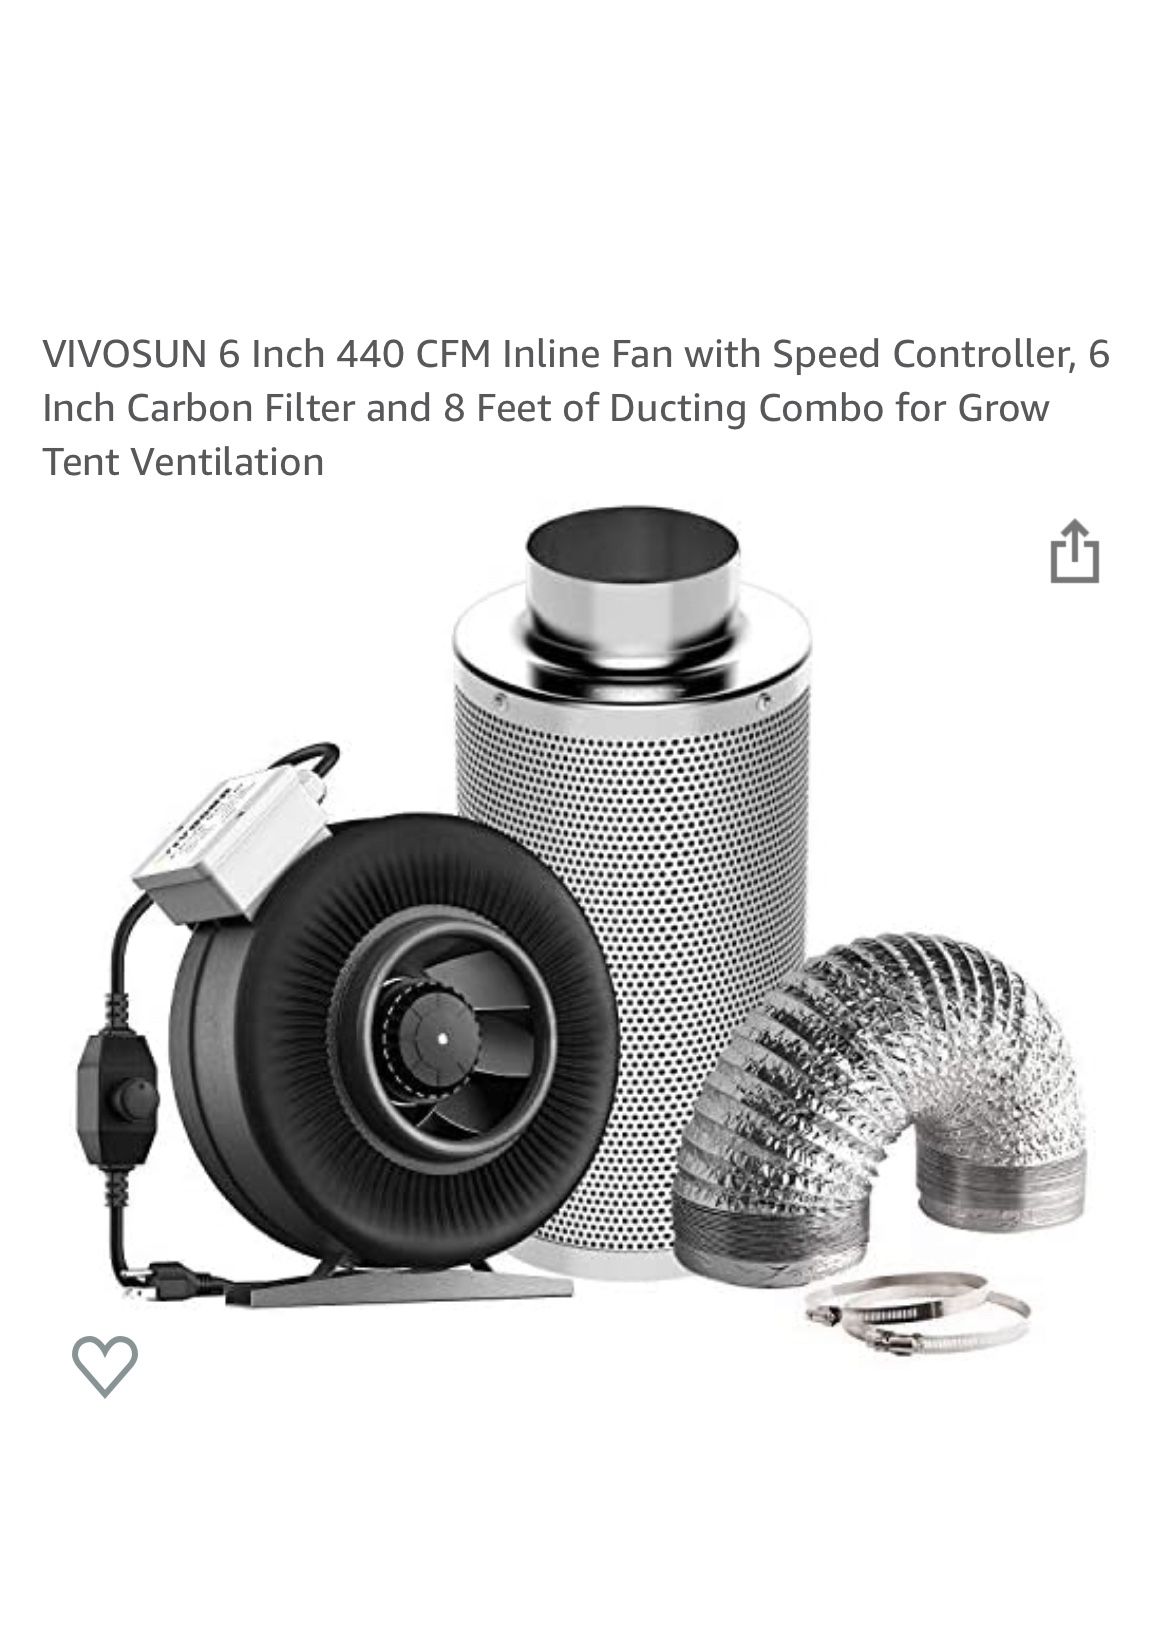 VIVOSUN 6 Inch 440 CFM Inline Fan, Carbon Filter & Ducting